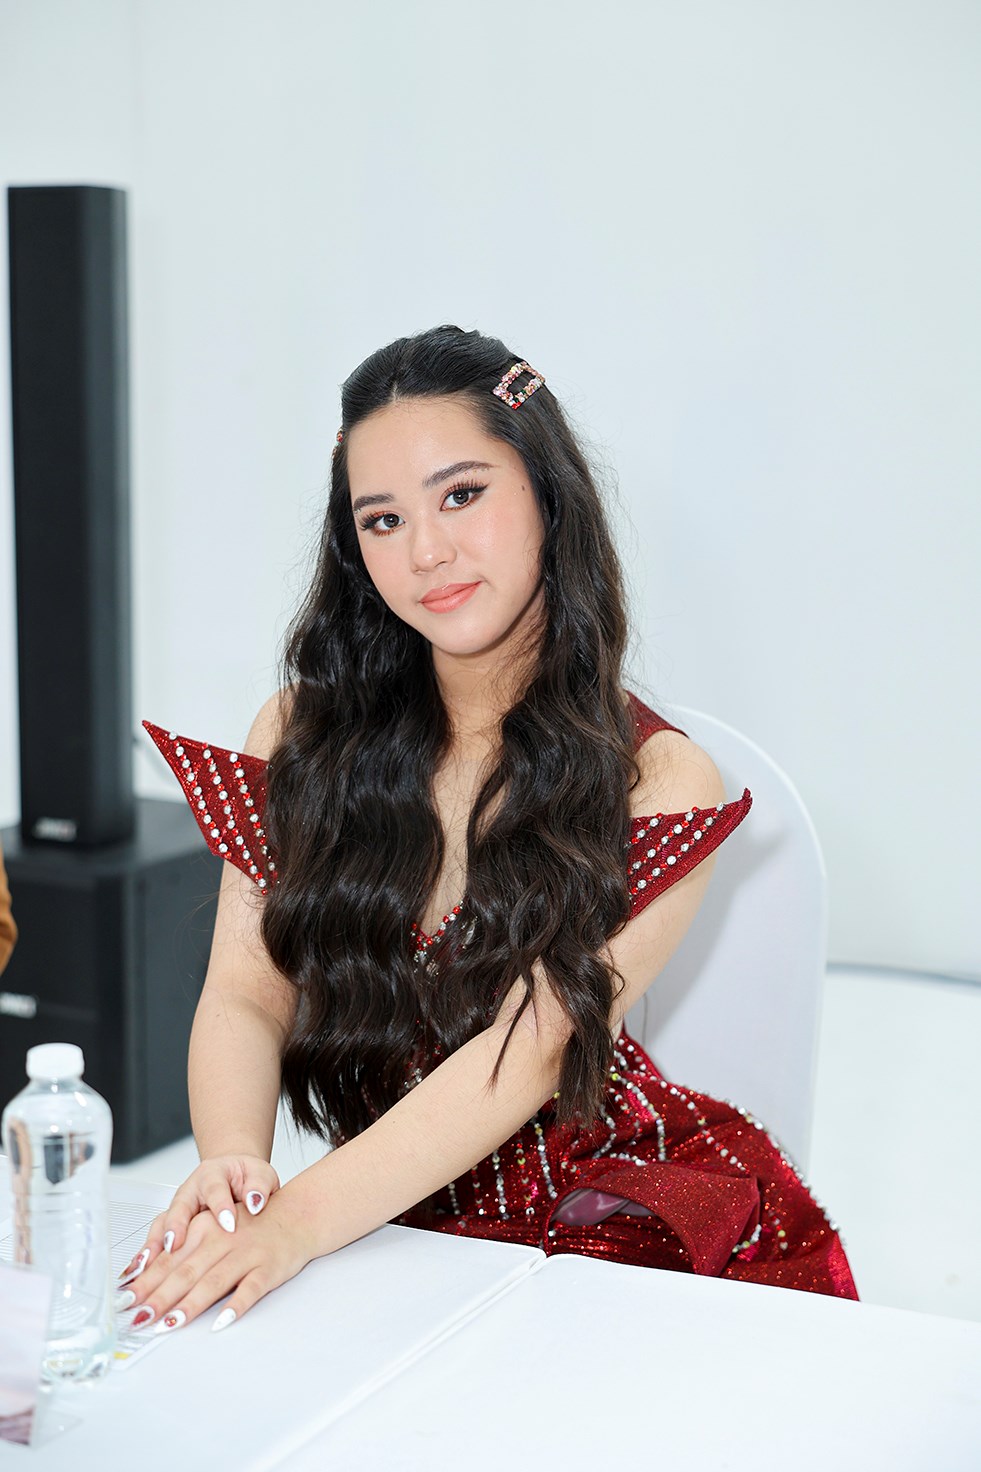 Siêu mẫu Quốc tế 2018 Khả Trang khoe dáng nóng bỏng khi ngồi ghế giám khảo  - ảnh 5